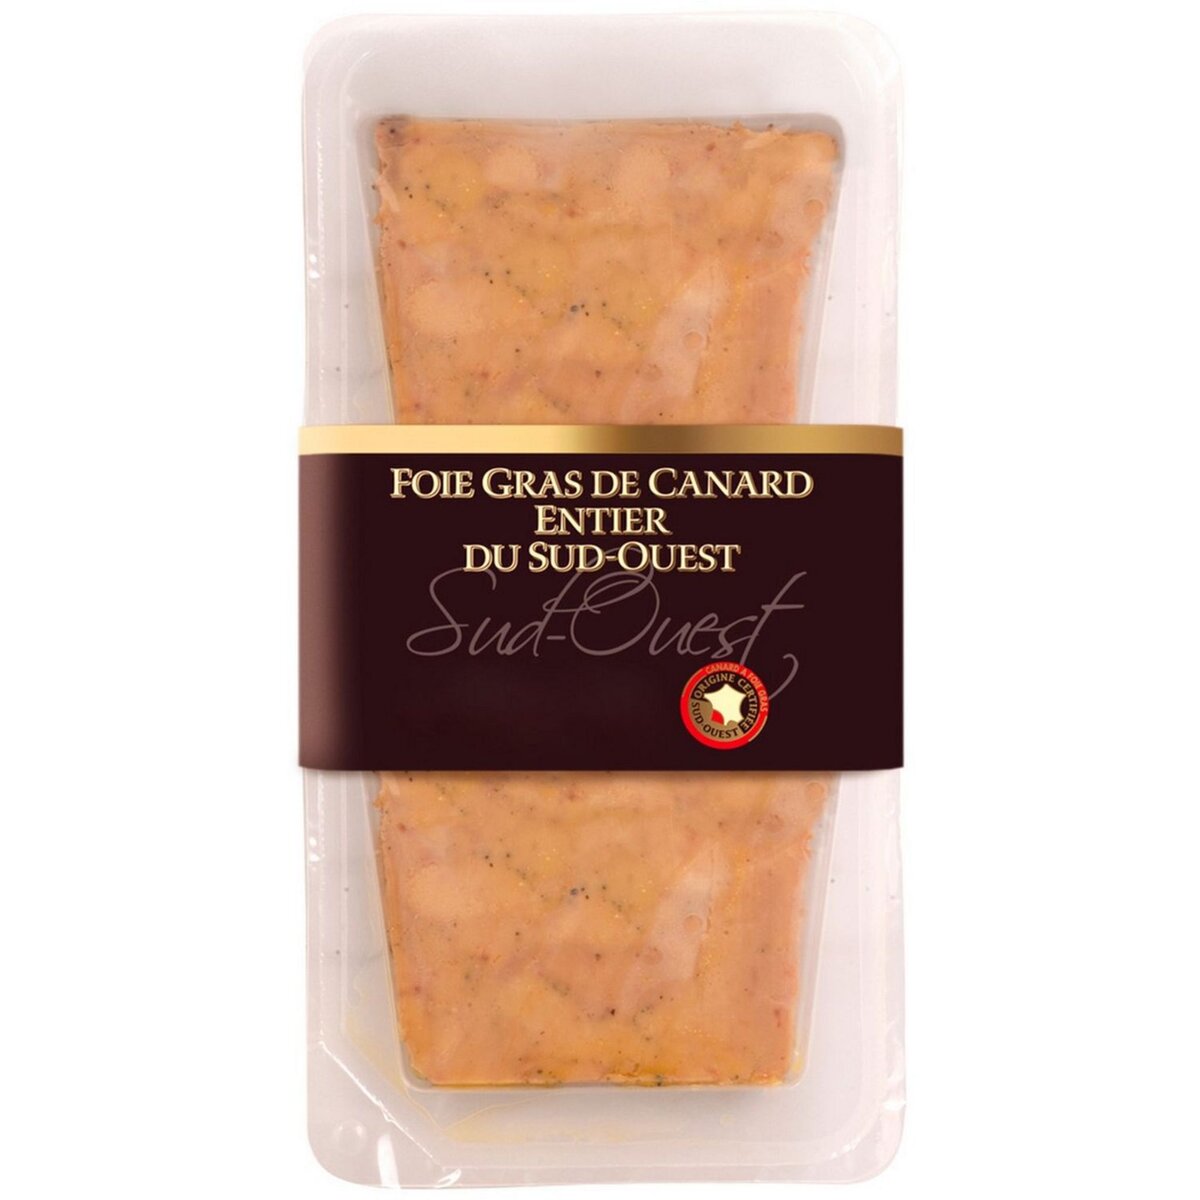 Foie gras de canard entier 2x40g